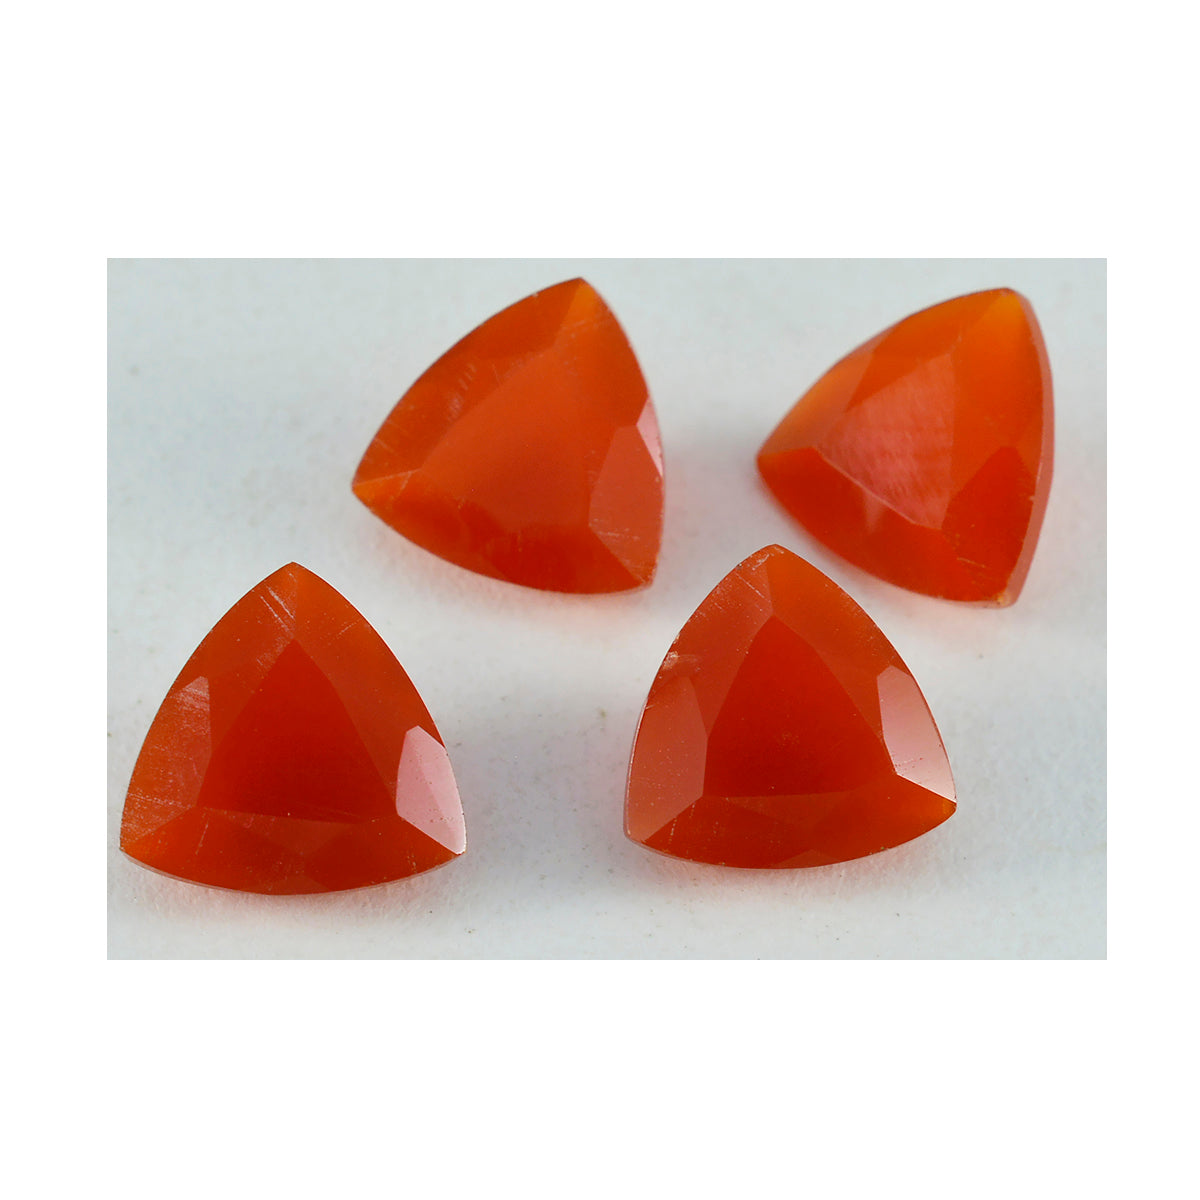 Riyogems 1PC echte rode onyx gefacetteerde 7x7 mm biljoen vorm verrassende kwaliteit edelstenen